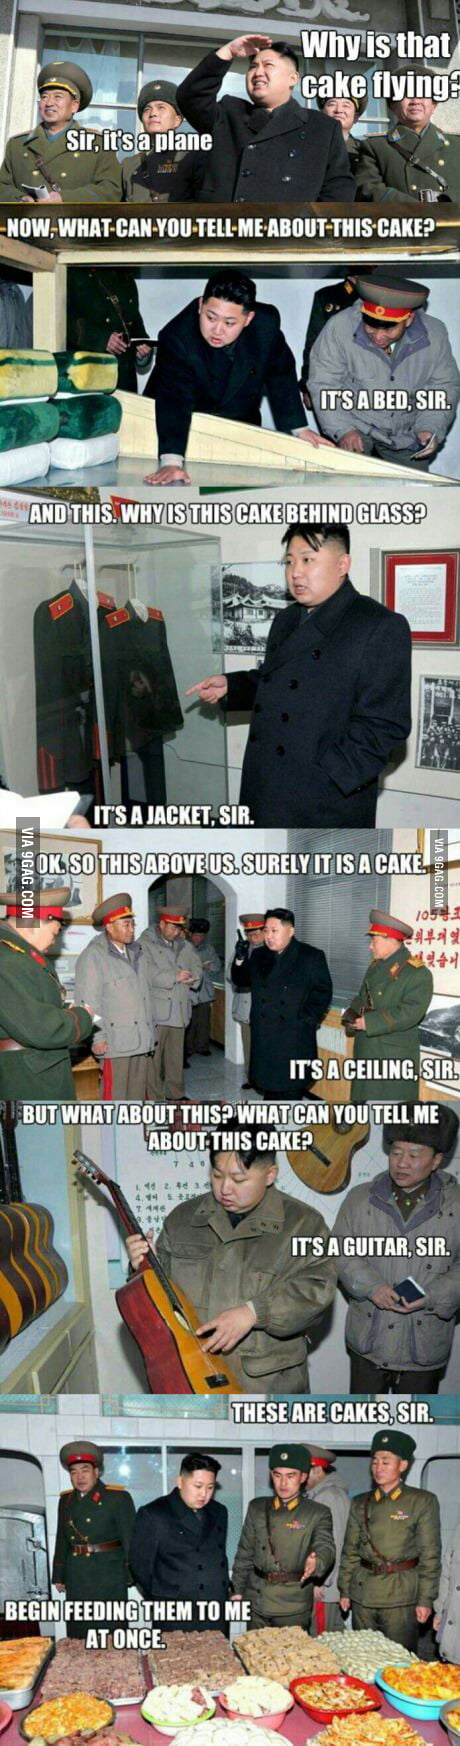 Kim Jong Un And His Love For Cake 9GAG